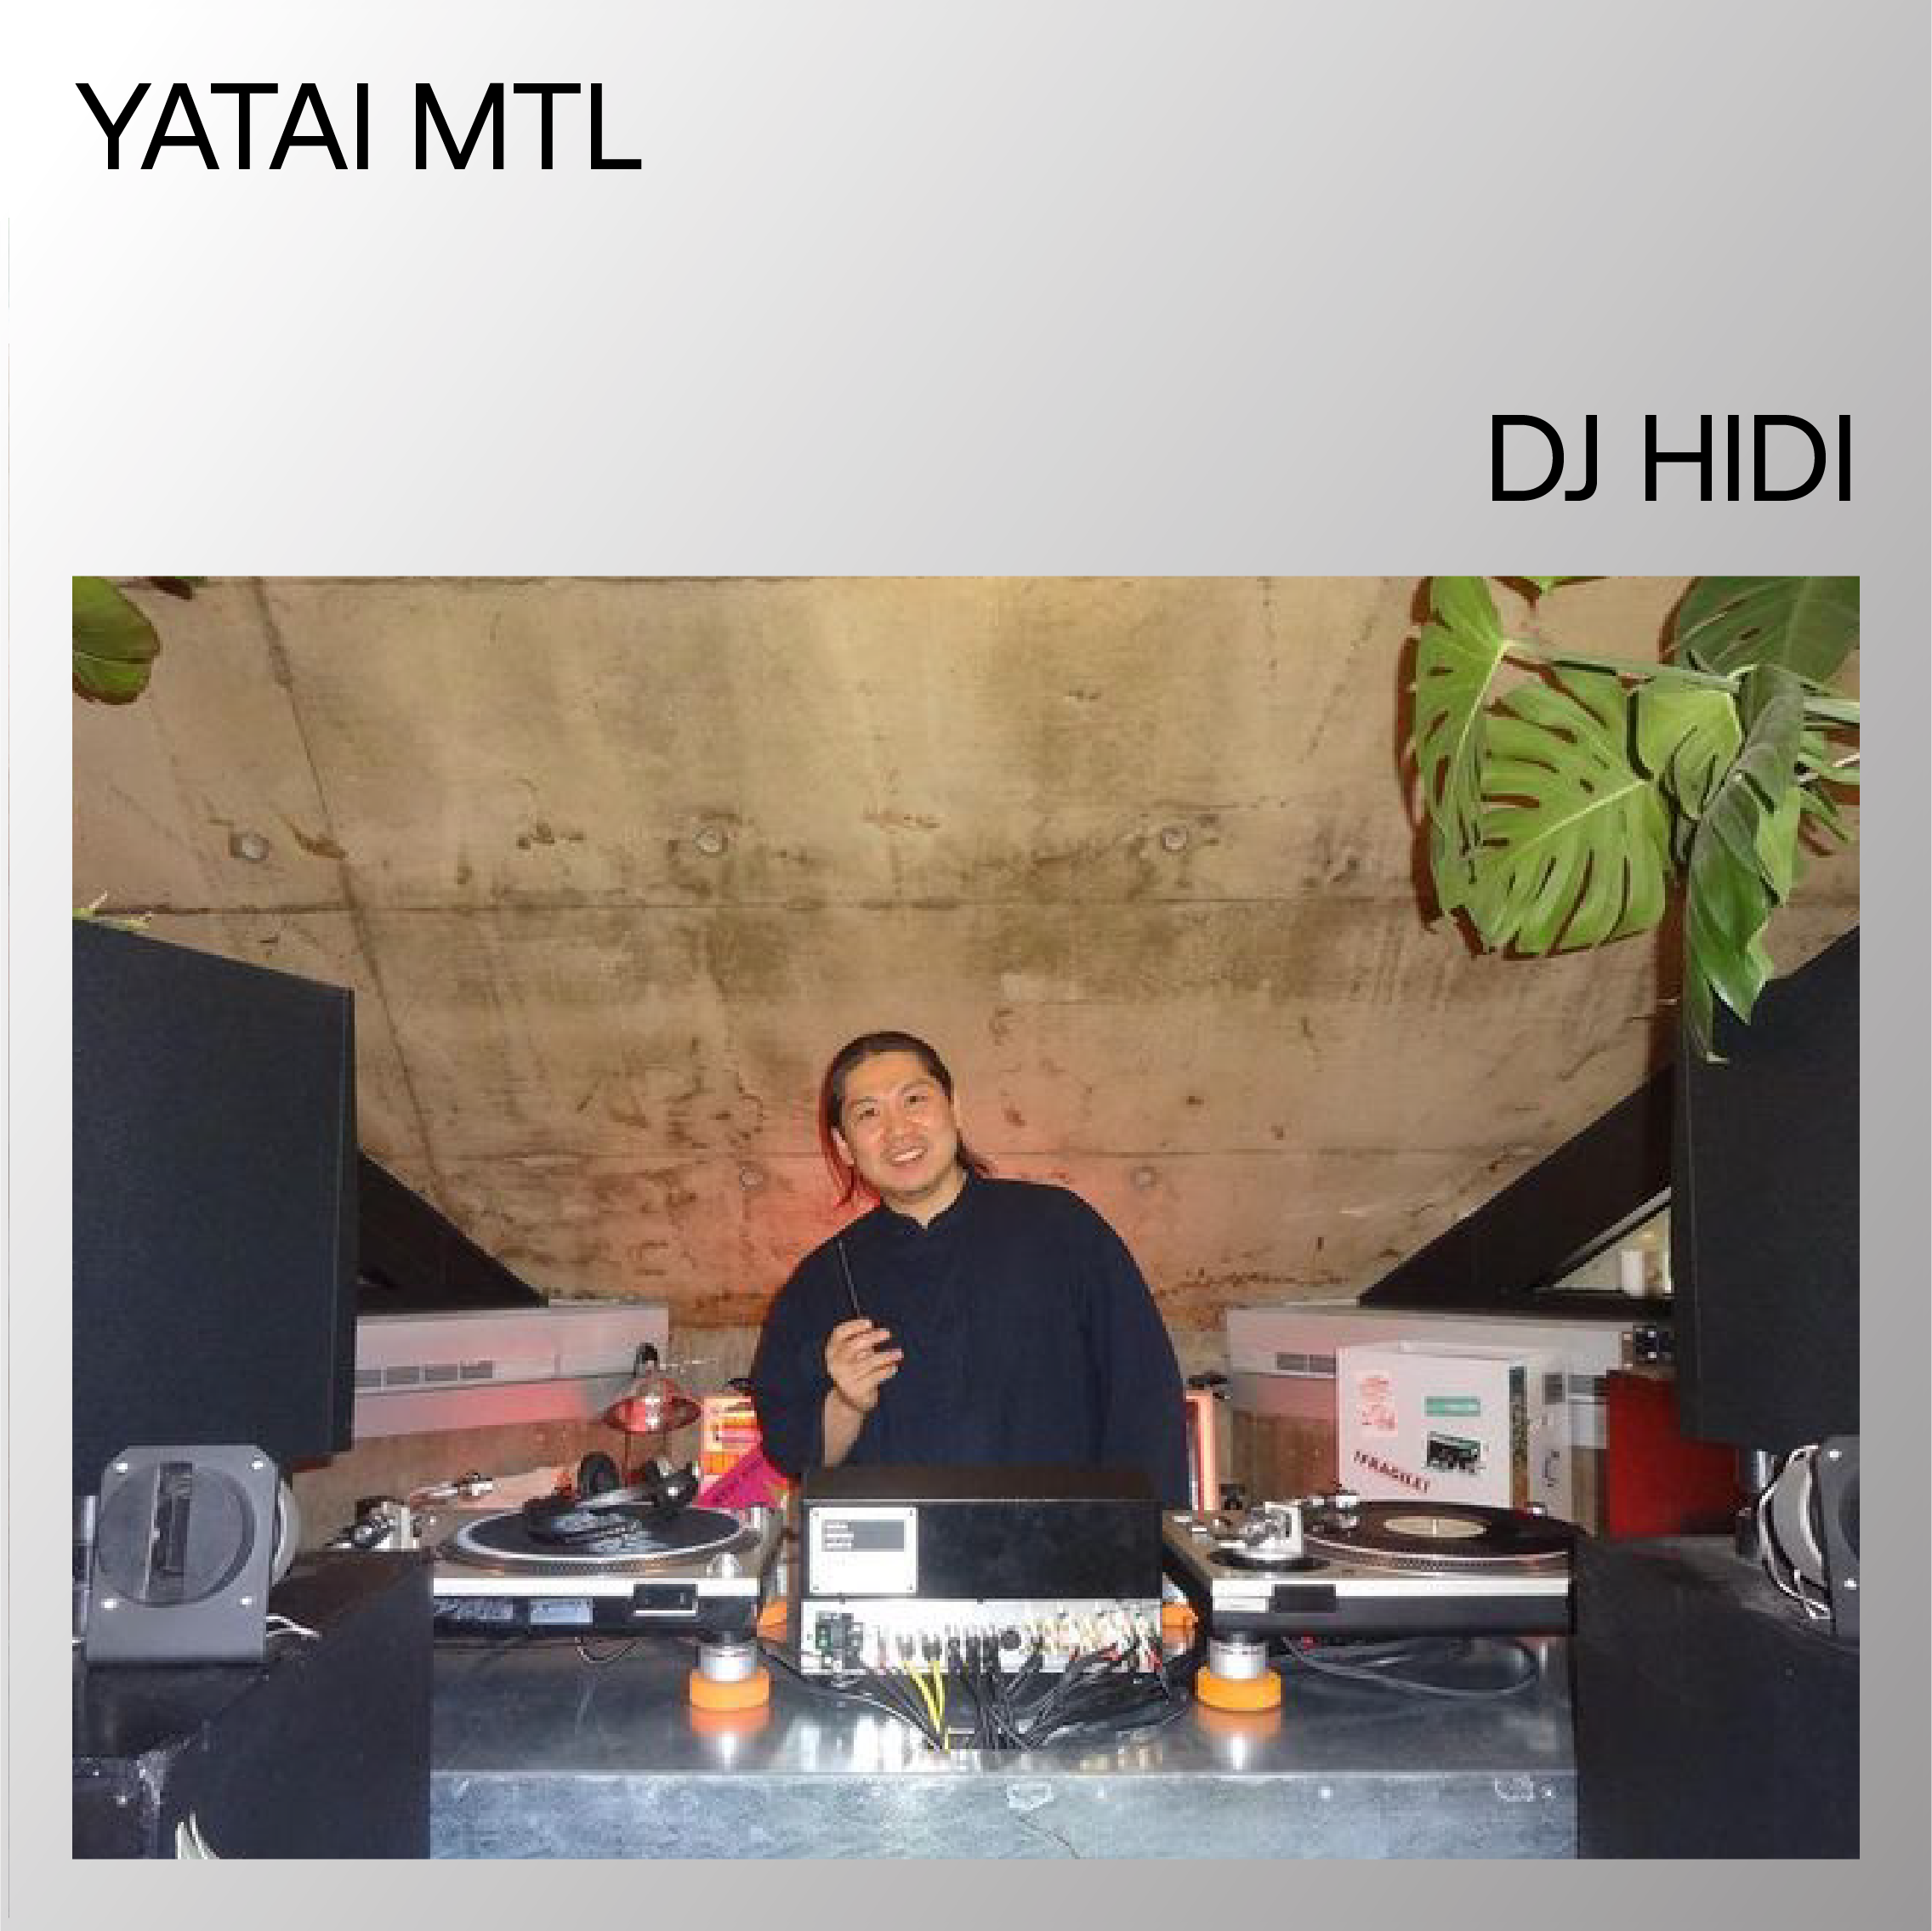 DJ HIDI